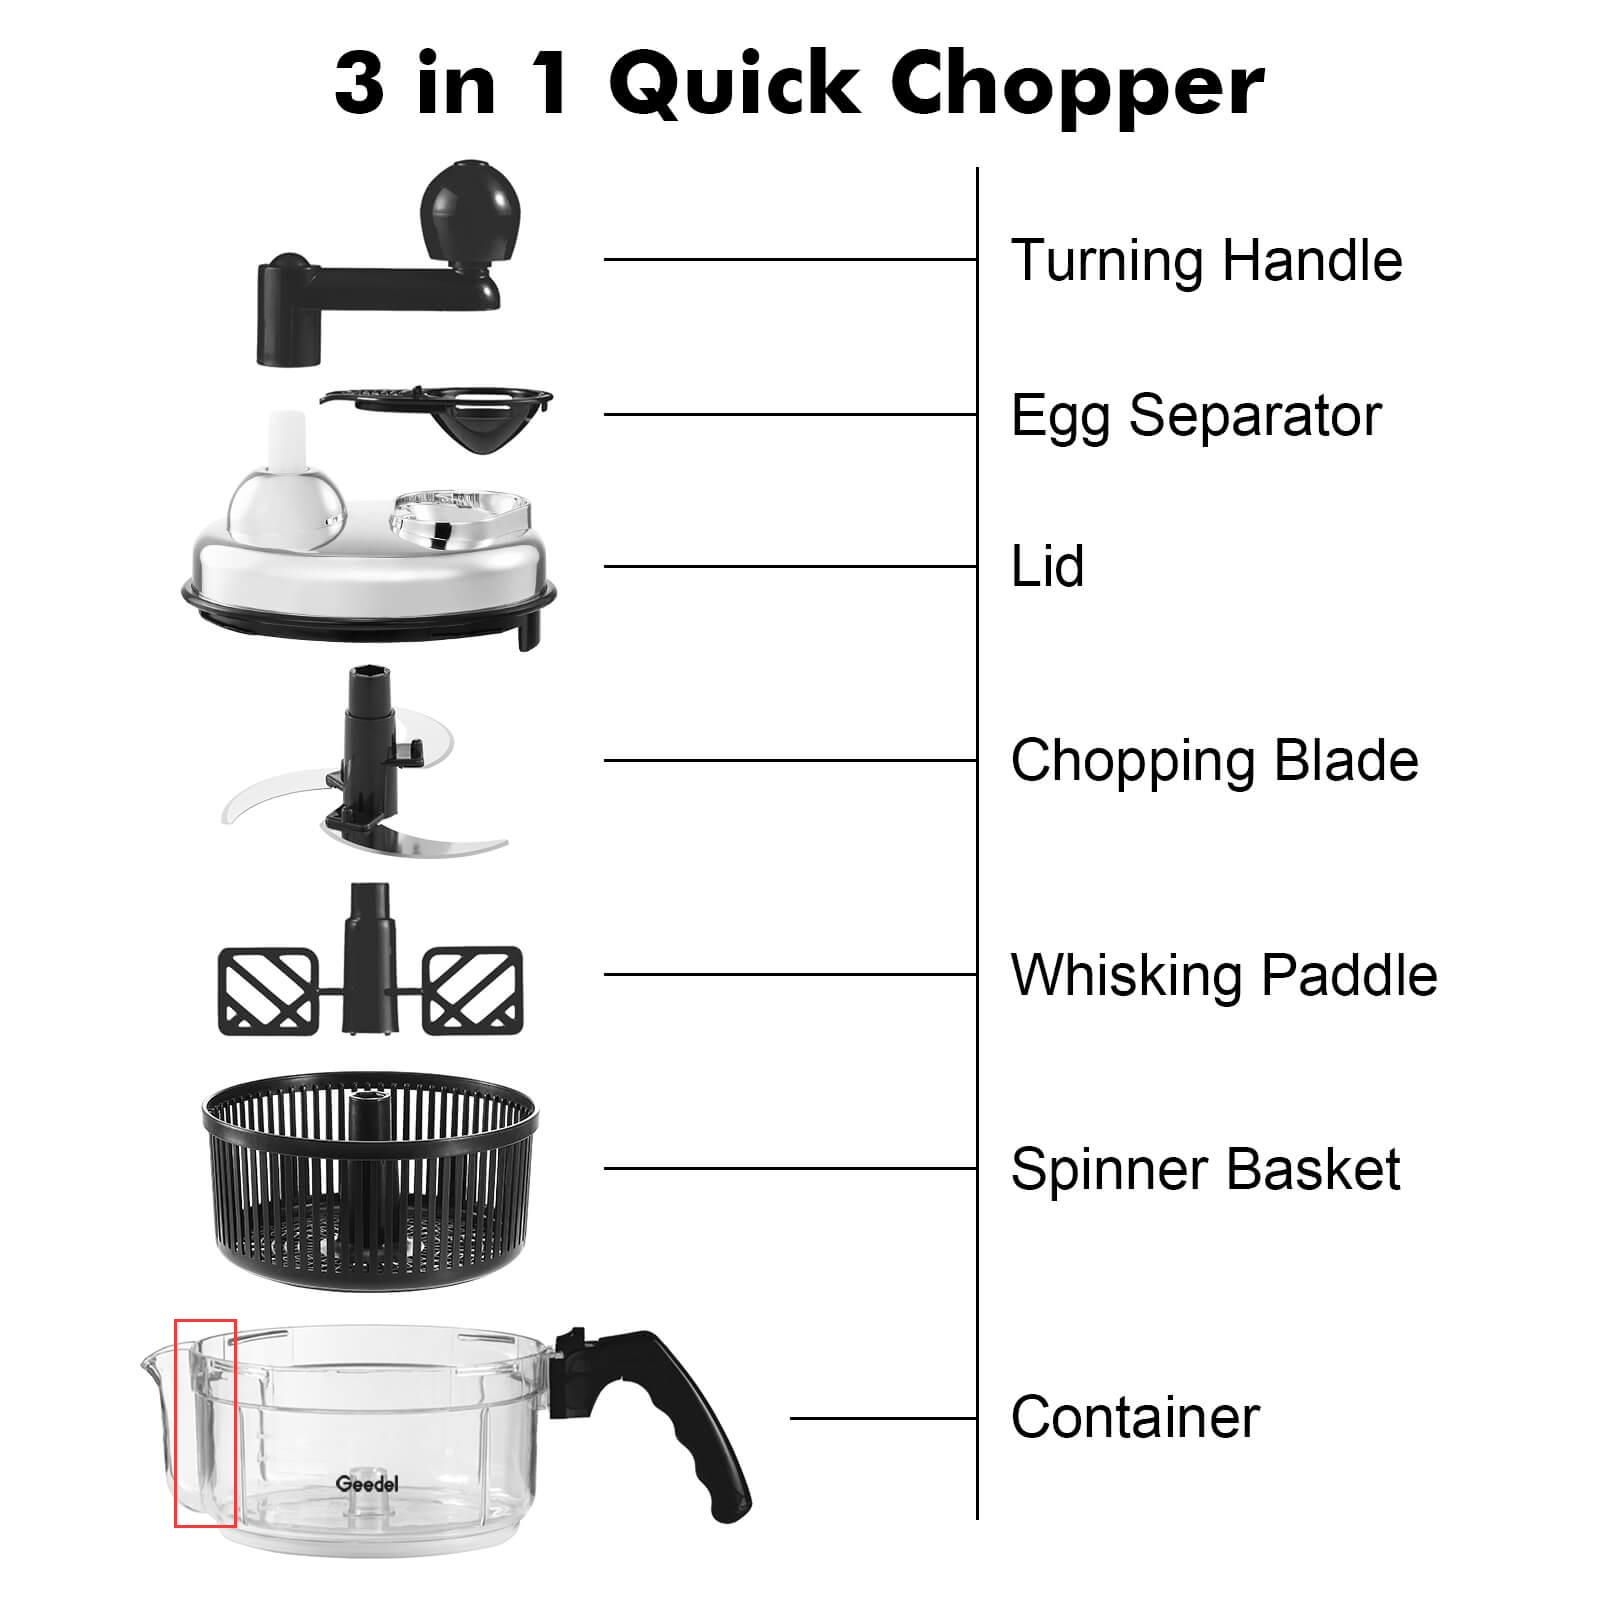 Geedel Hand Food Chopper